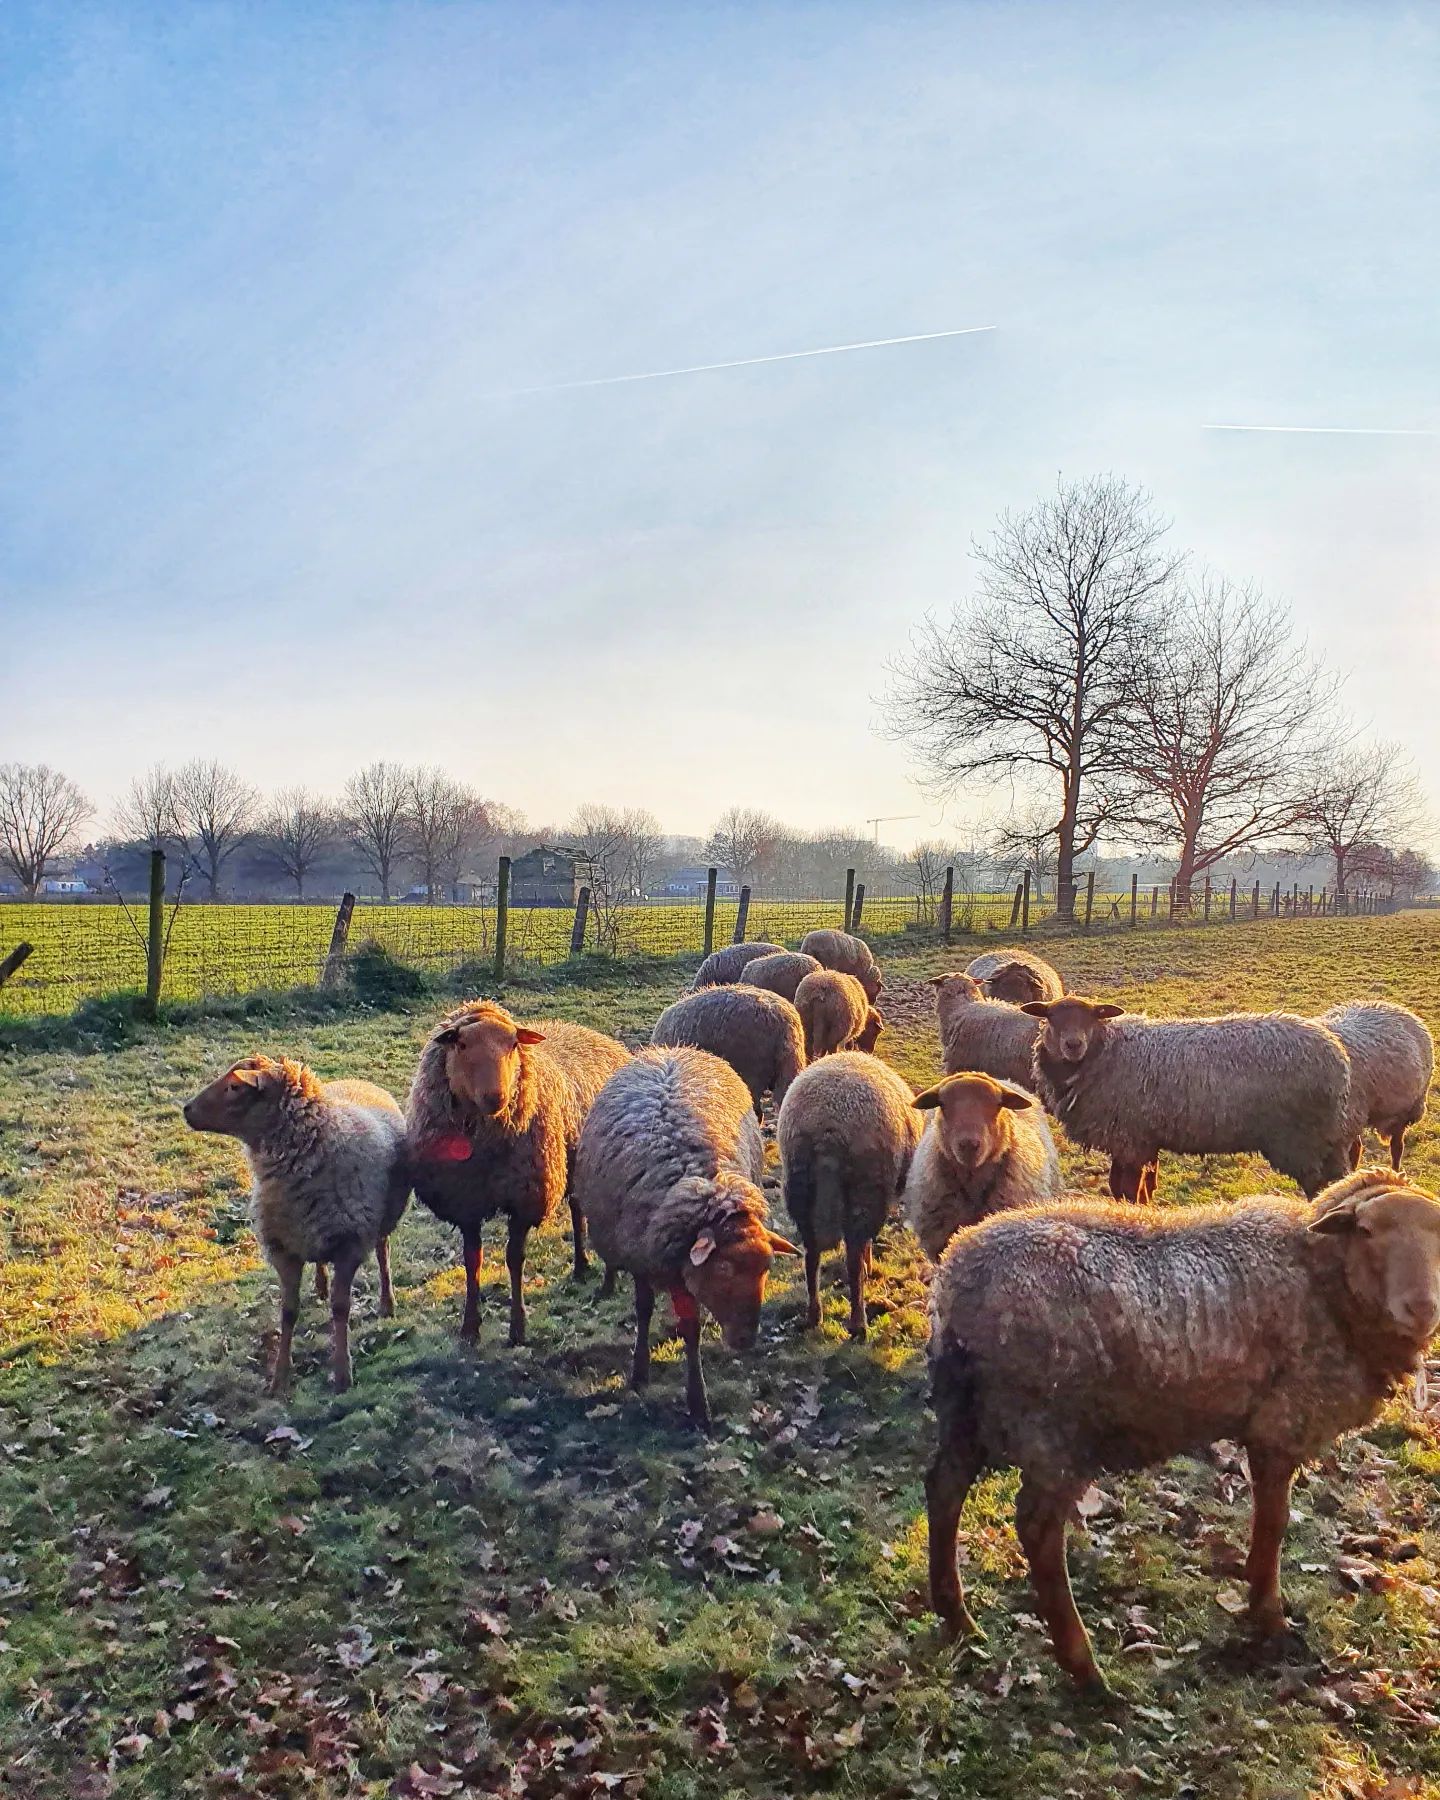 Wat een zonnige dag vandaag! Net voor zonsondergang "de vriendjes" nog even gegroet. 
Wat fijn, zo´n (voor mij toch) onverwacht zonnige dag!
.
#sunset #schapen #weide #avond #schemer #eindevandedag #kleingelukske #dankbaar #buitenleven #buitenisbeter #sheep #documentyourdays